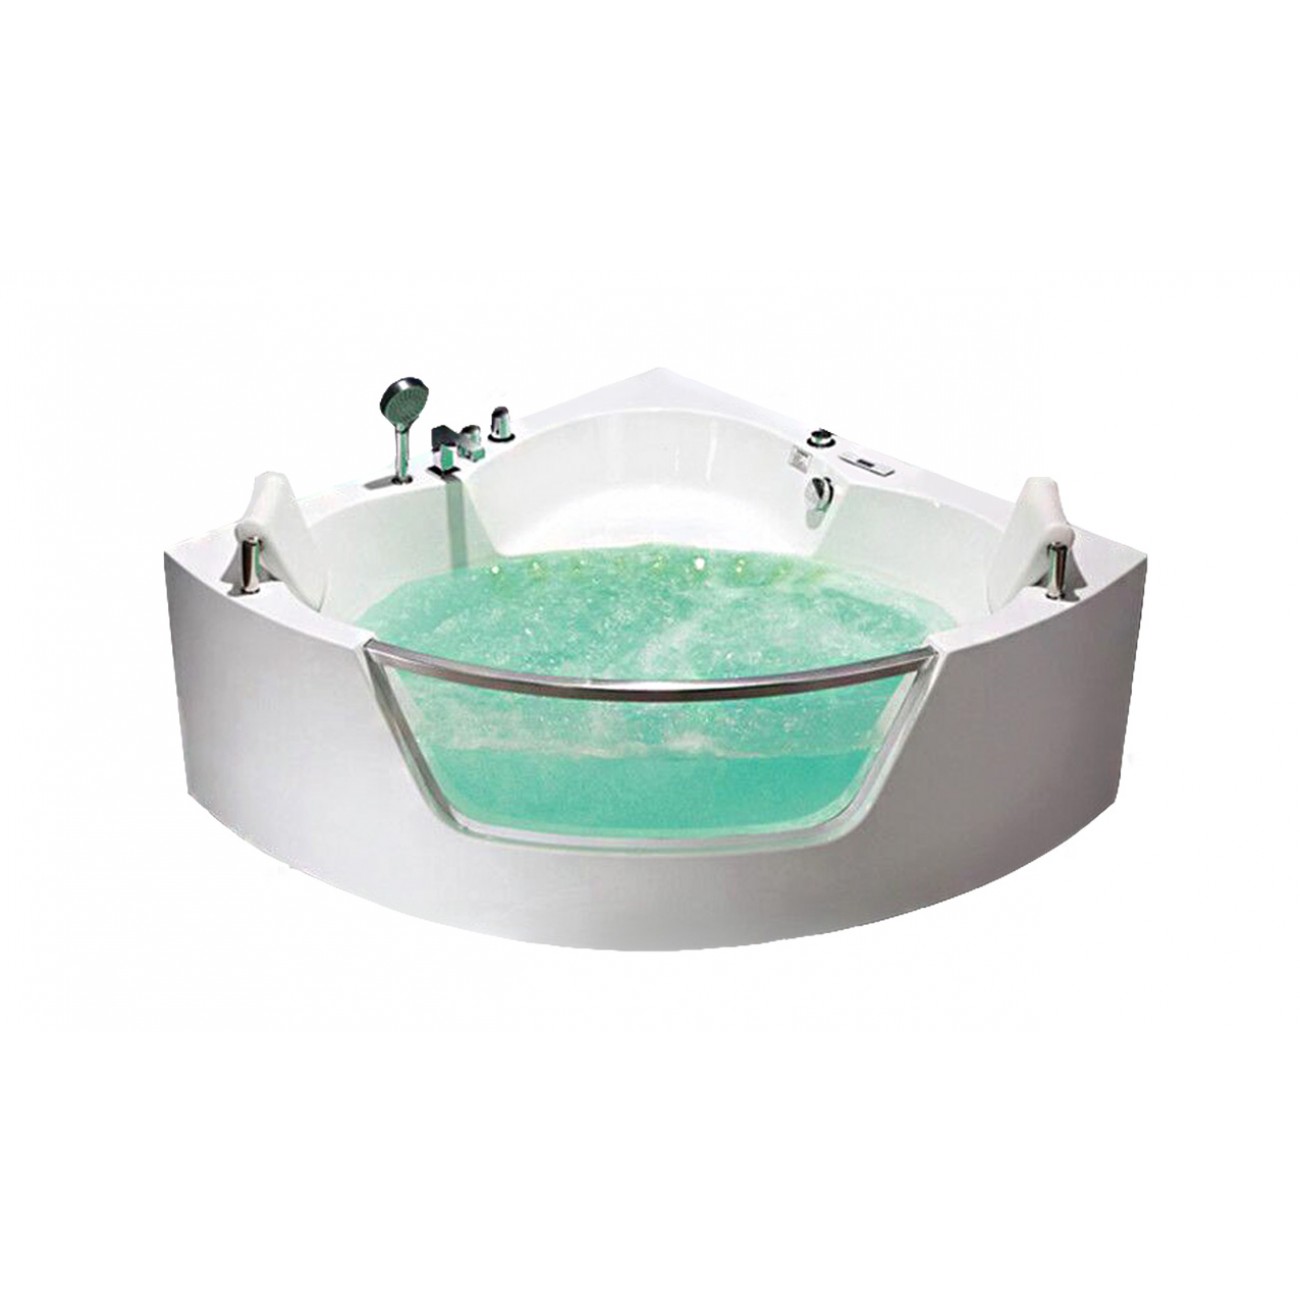 Гидромассажная ванна Frank 140x140 F164 угловая, белая, размер 140x140, цвет белый